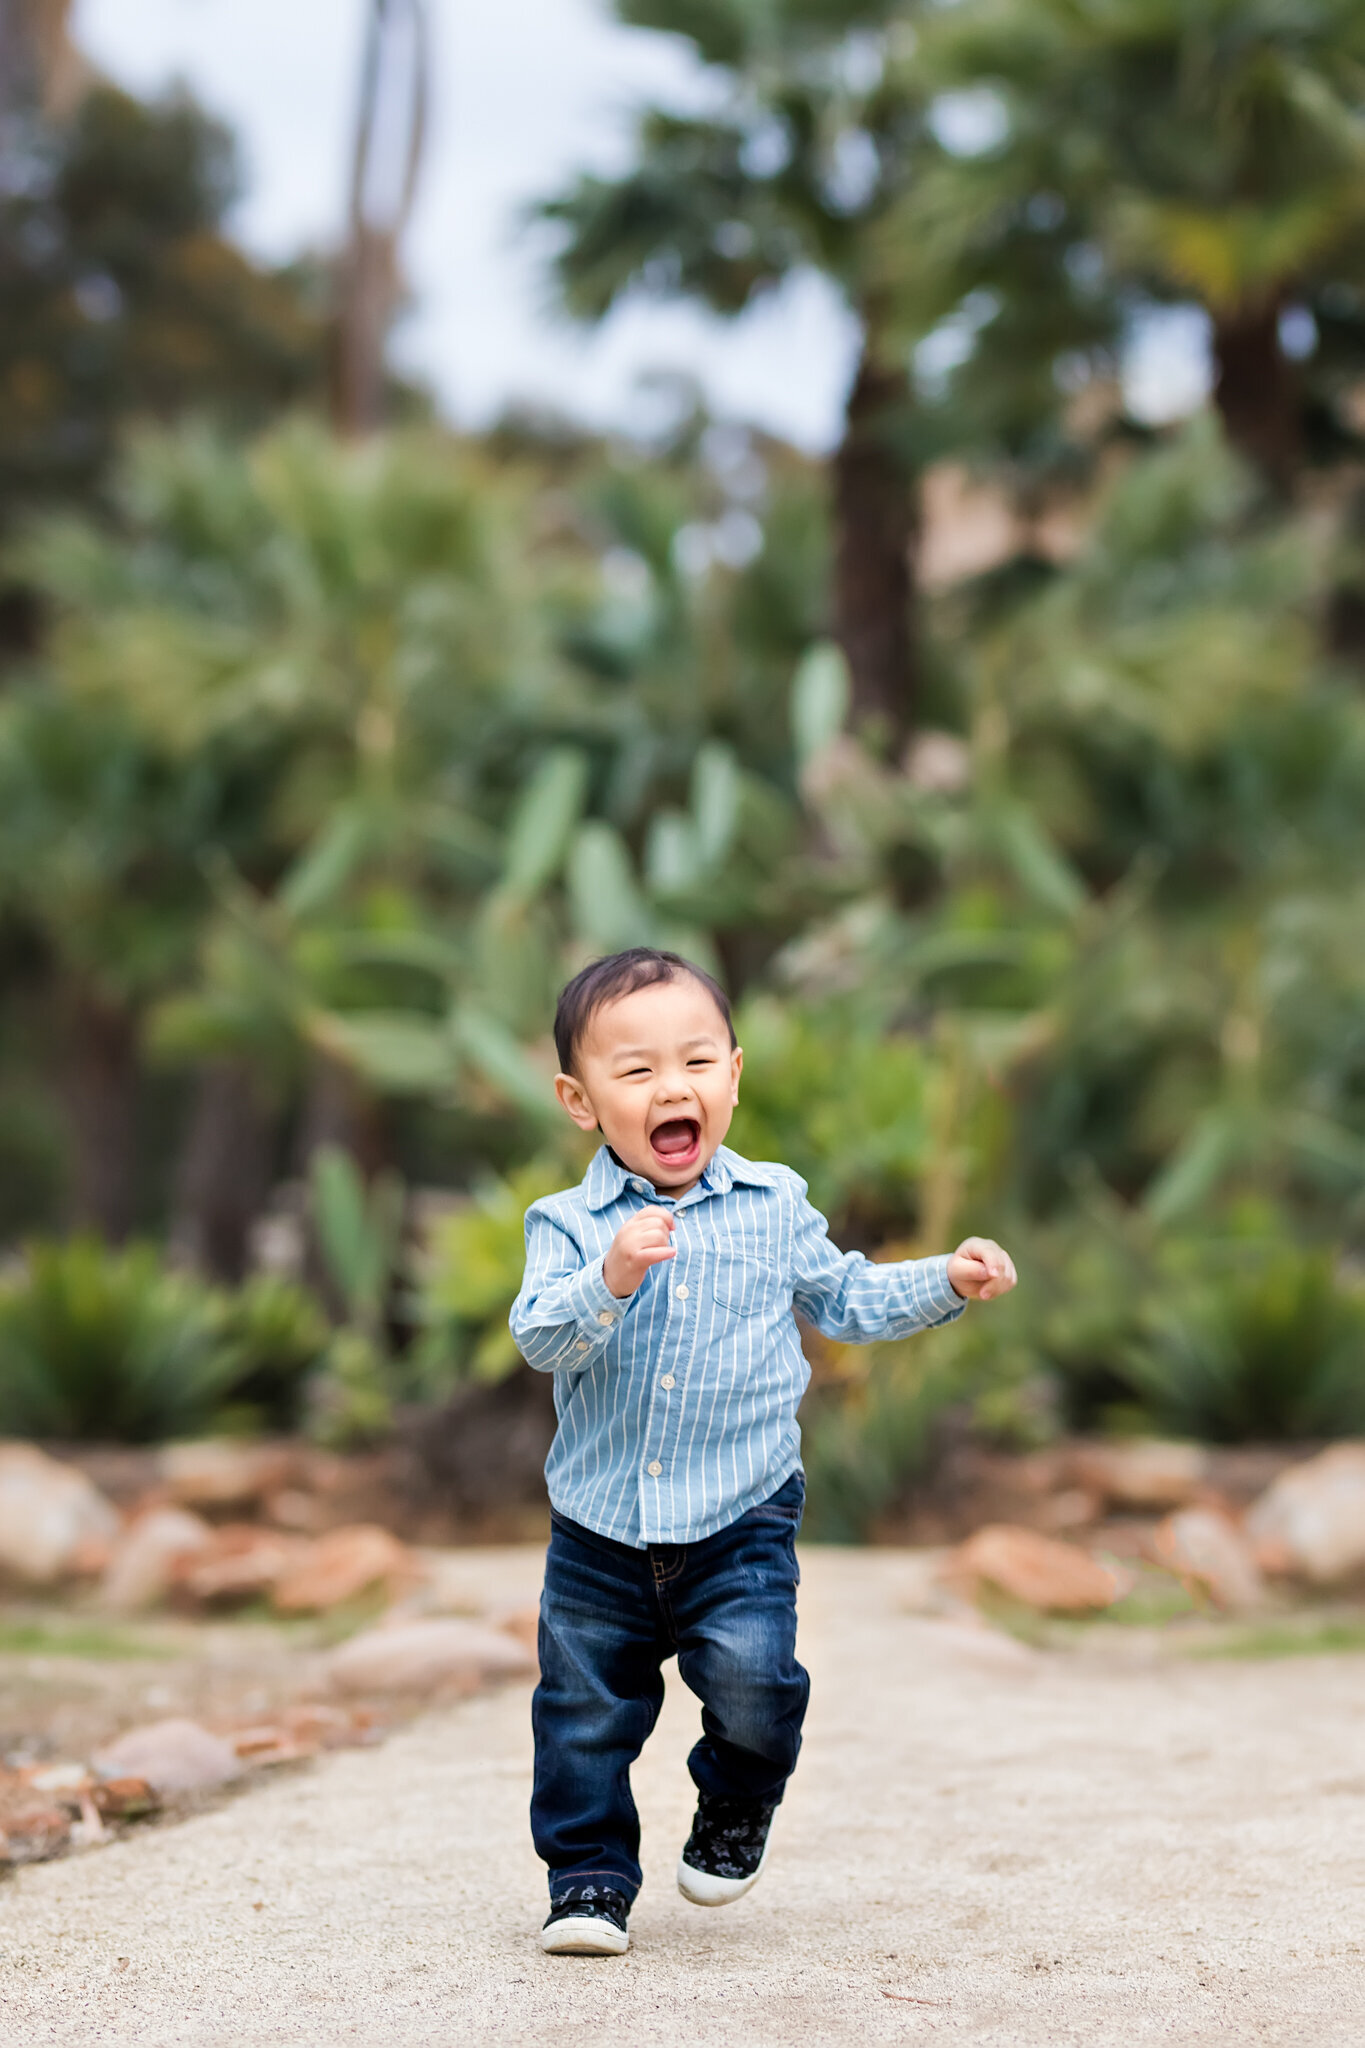 Baby boy running in a garden in San Diego